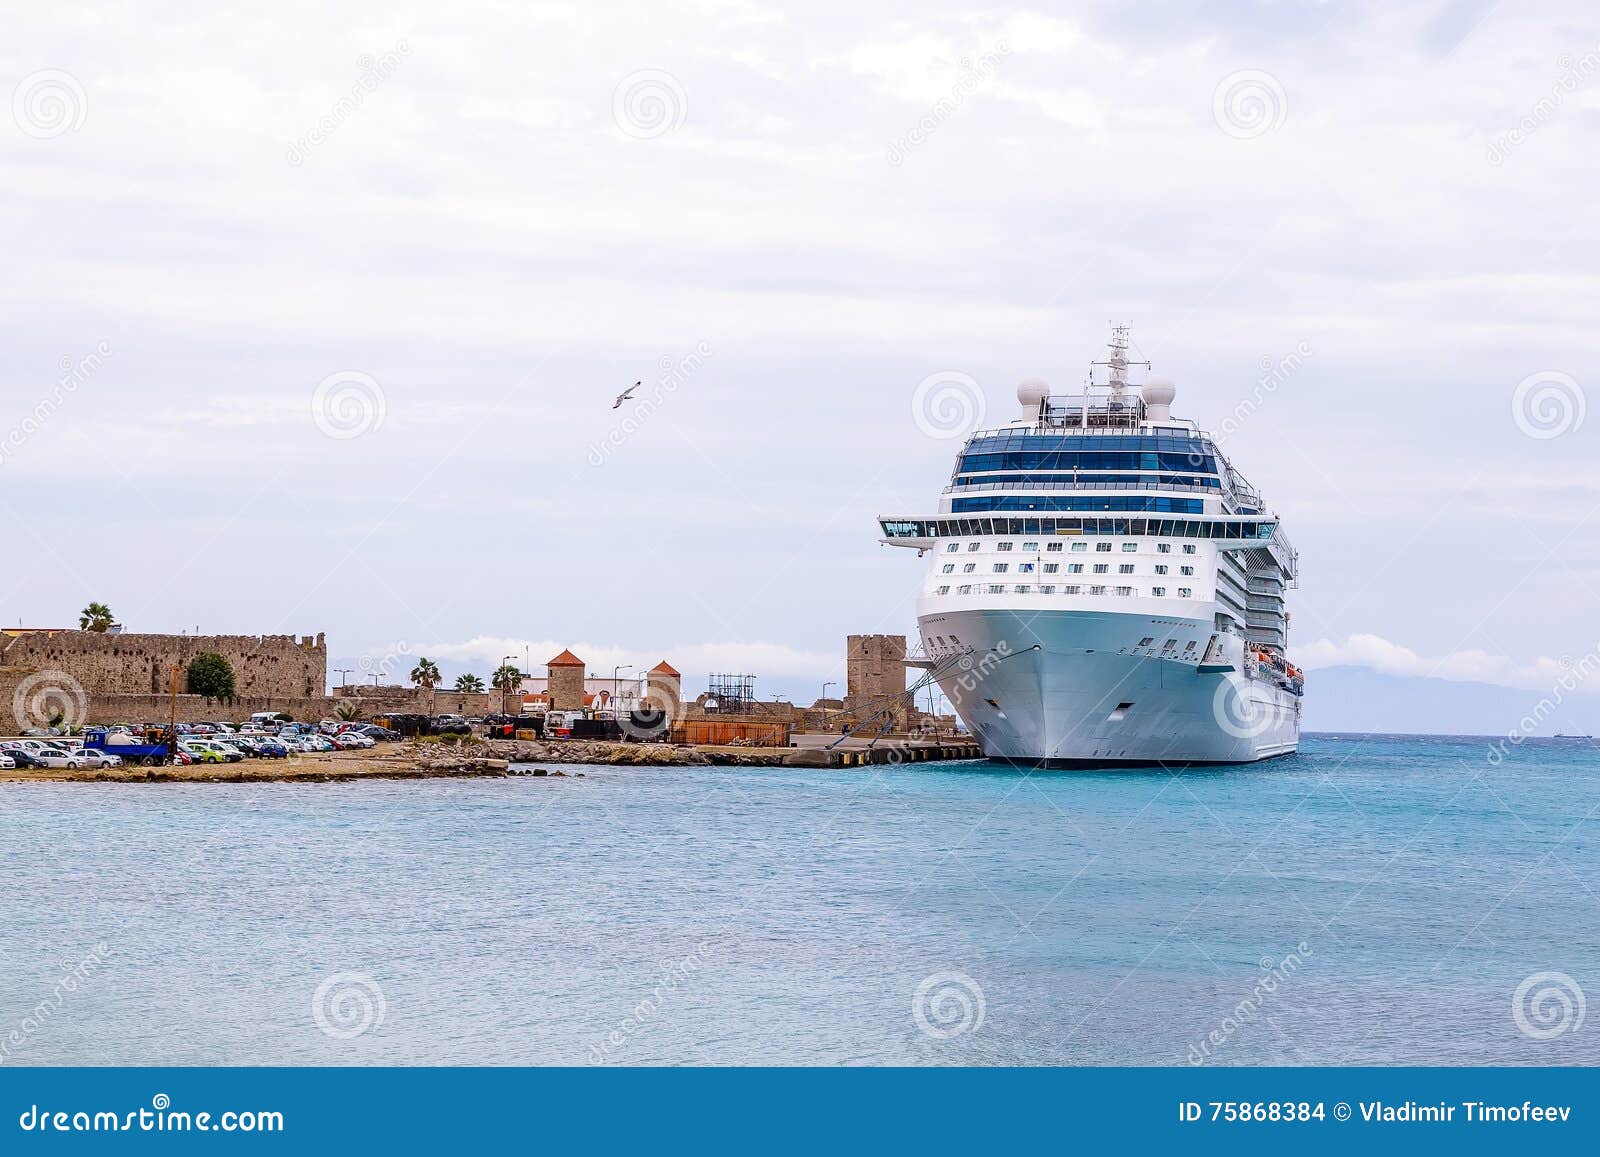 cruise ship port rhodes greece